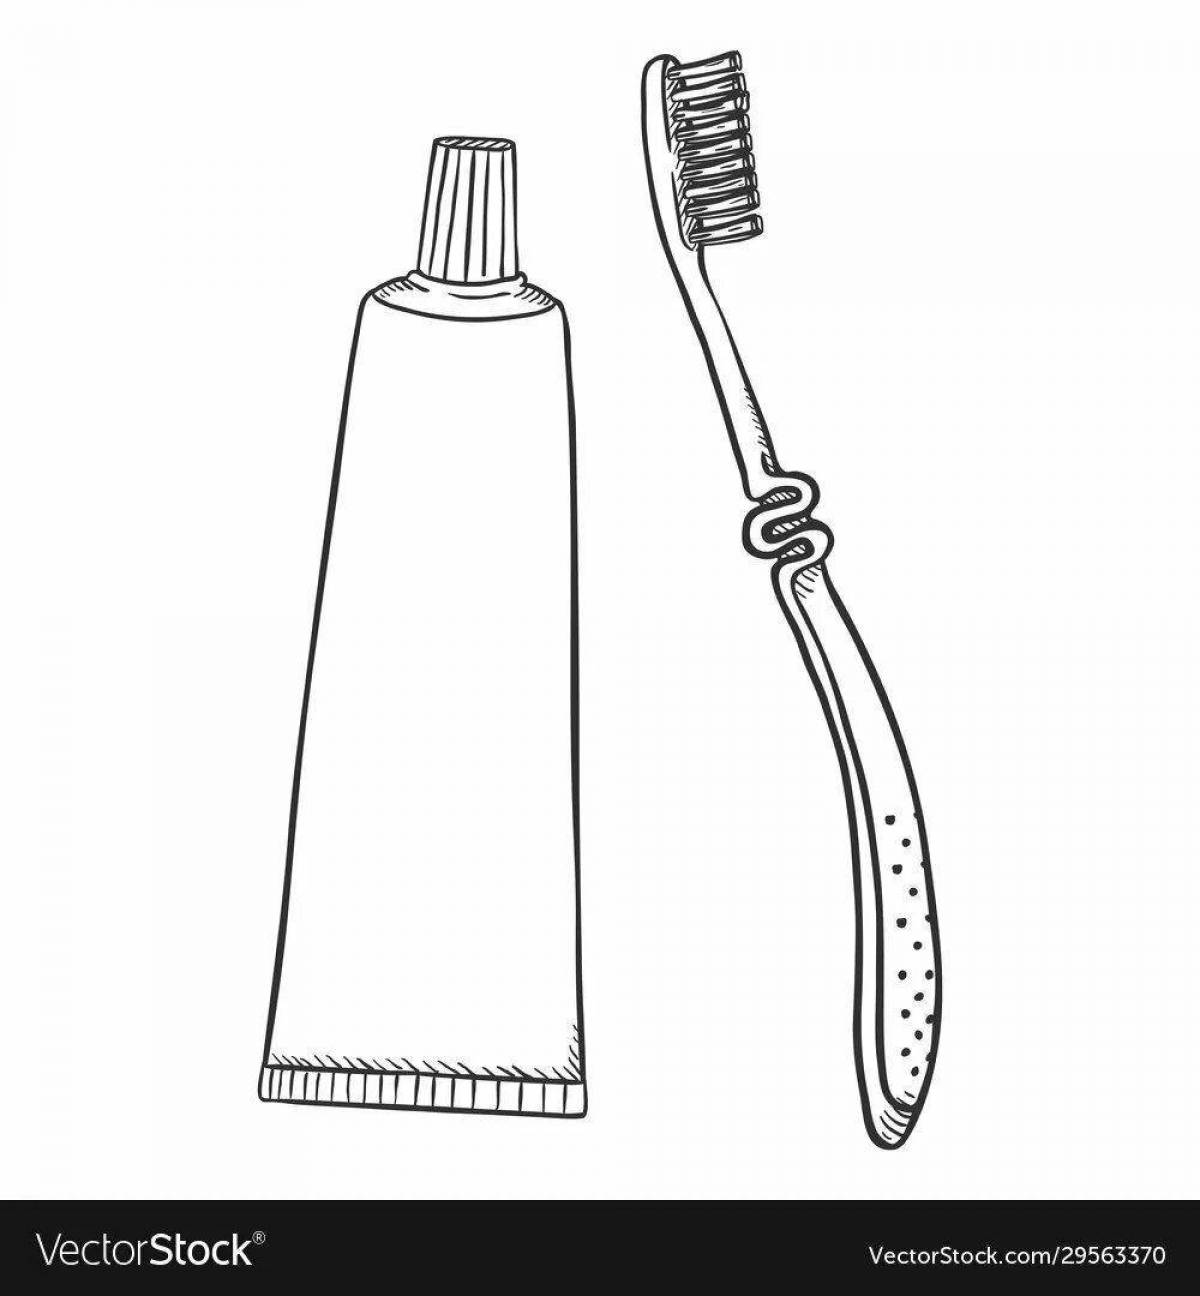 Зубная щетка и паста для детей #11